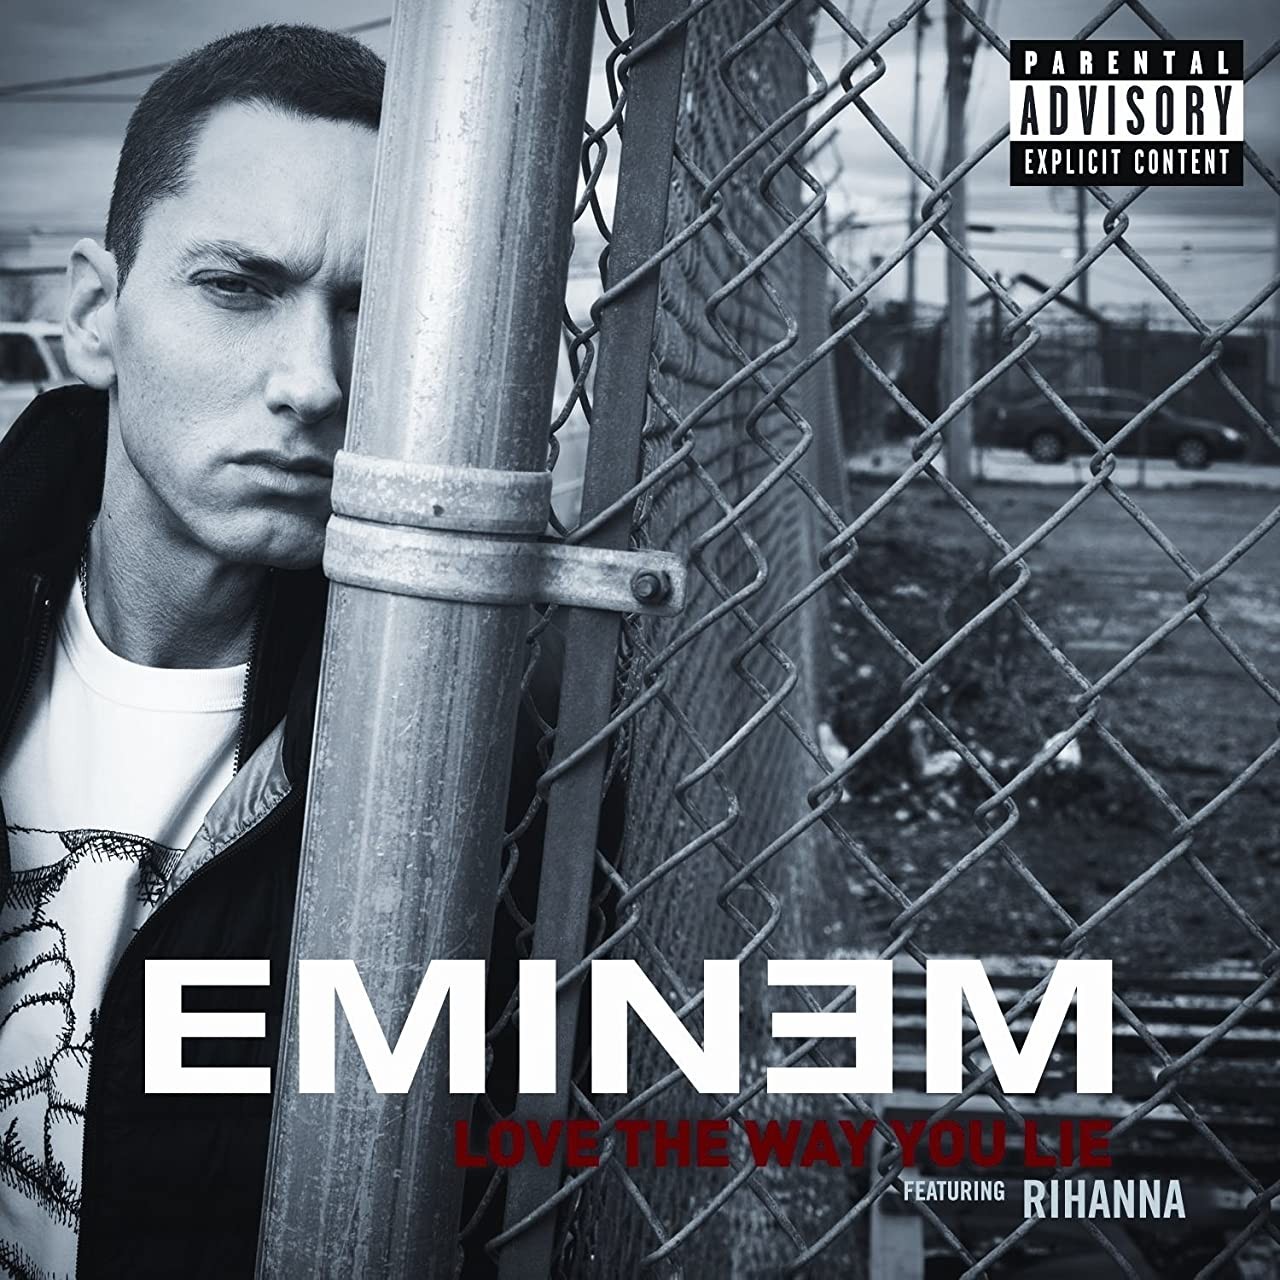 Eminem feat. Rihanna: Love the Way You Lie (2010) отзывы. Рецензии. Новости кино. Актеры фильма Eminem feat. Rihanna: Love the Way You Lie. Отзывы о фильме Eminem feat. Rihanna: Love the Way You Lie